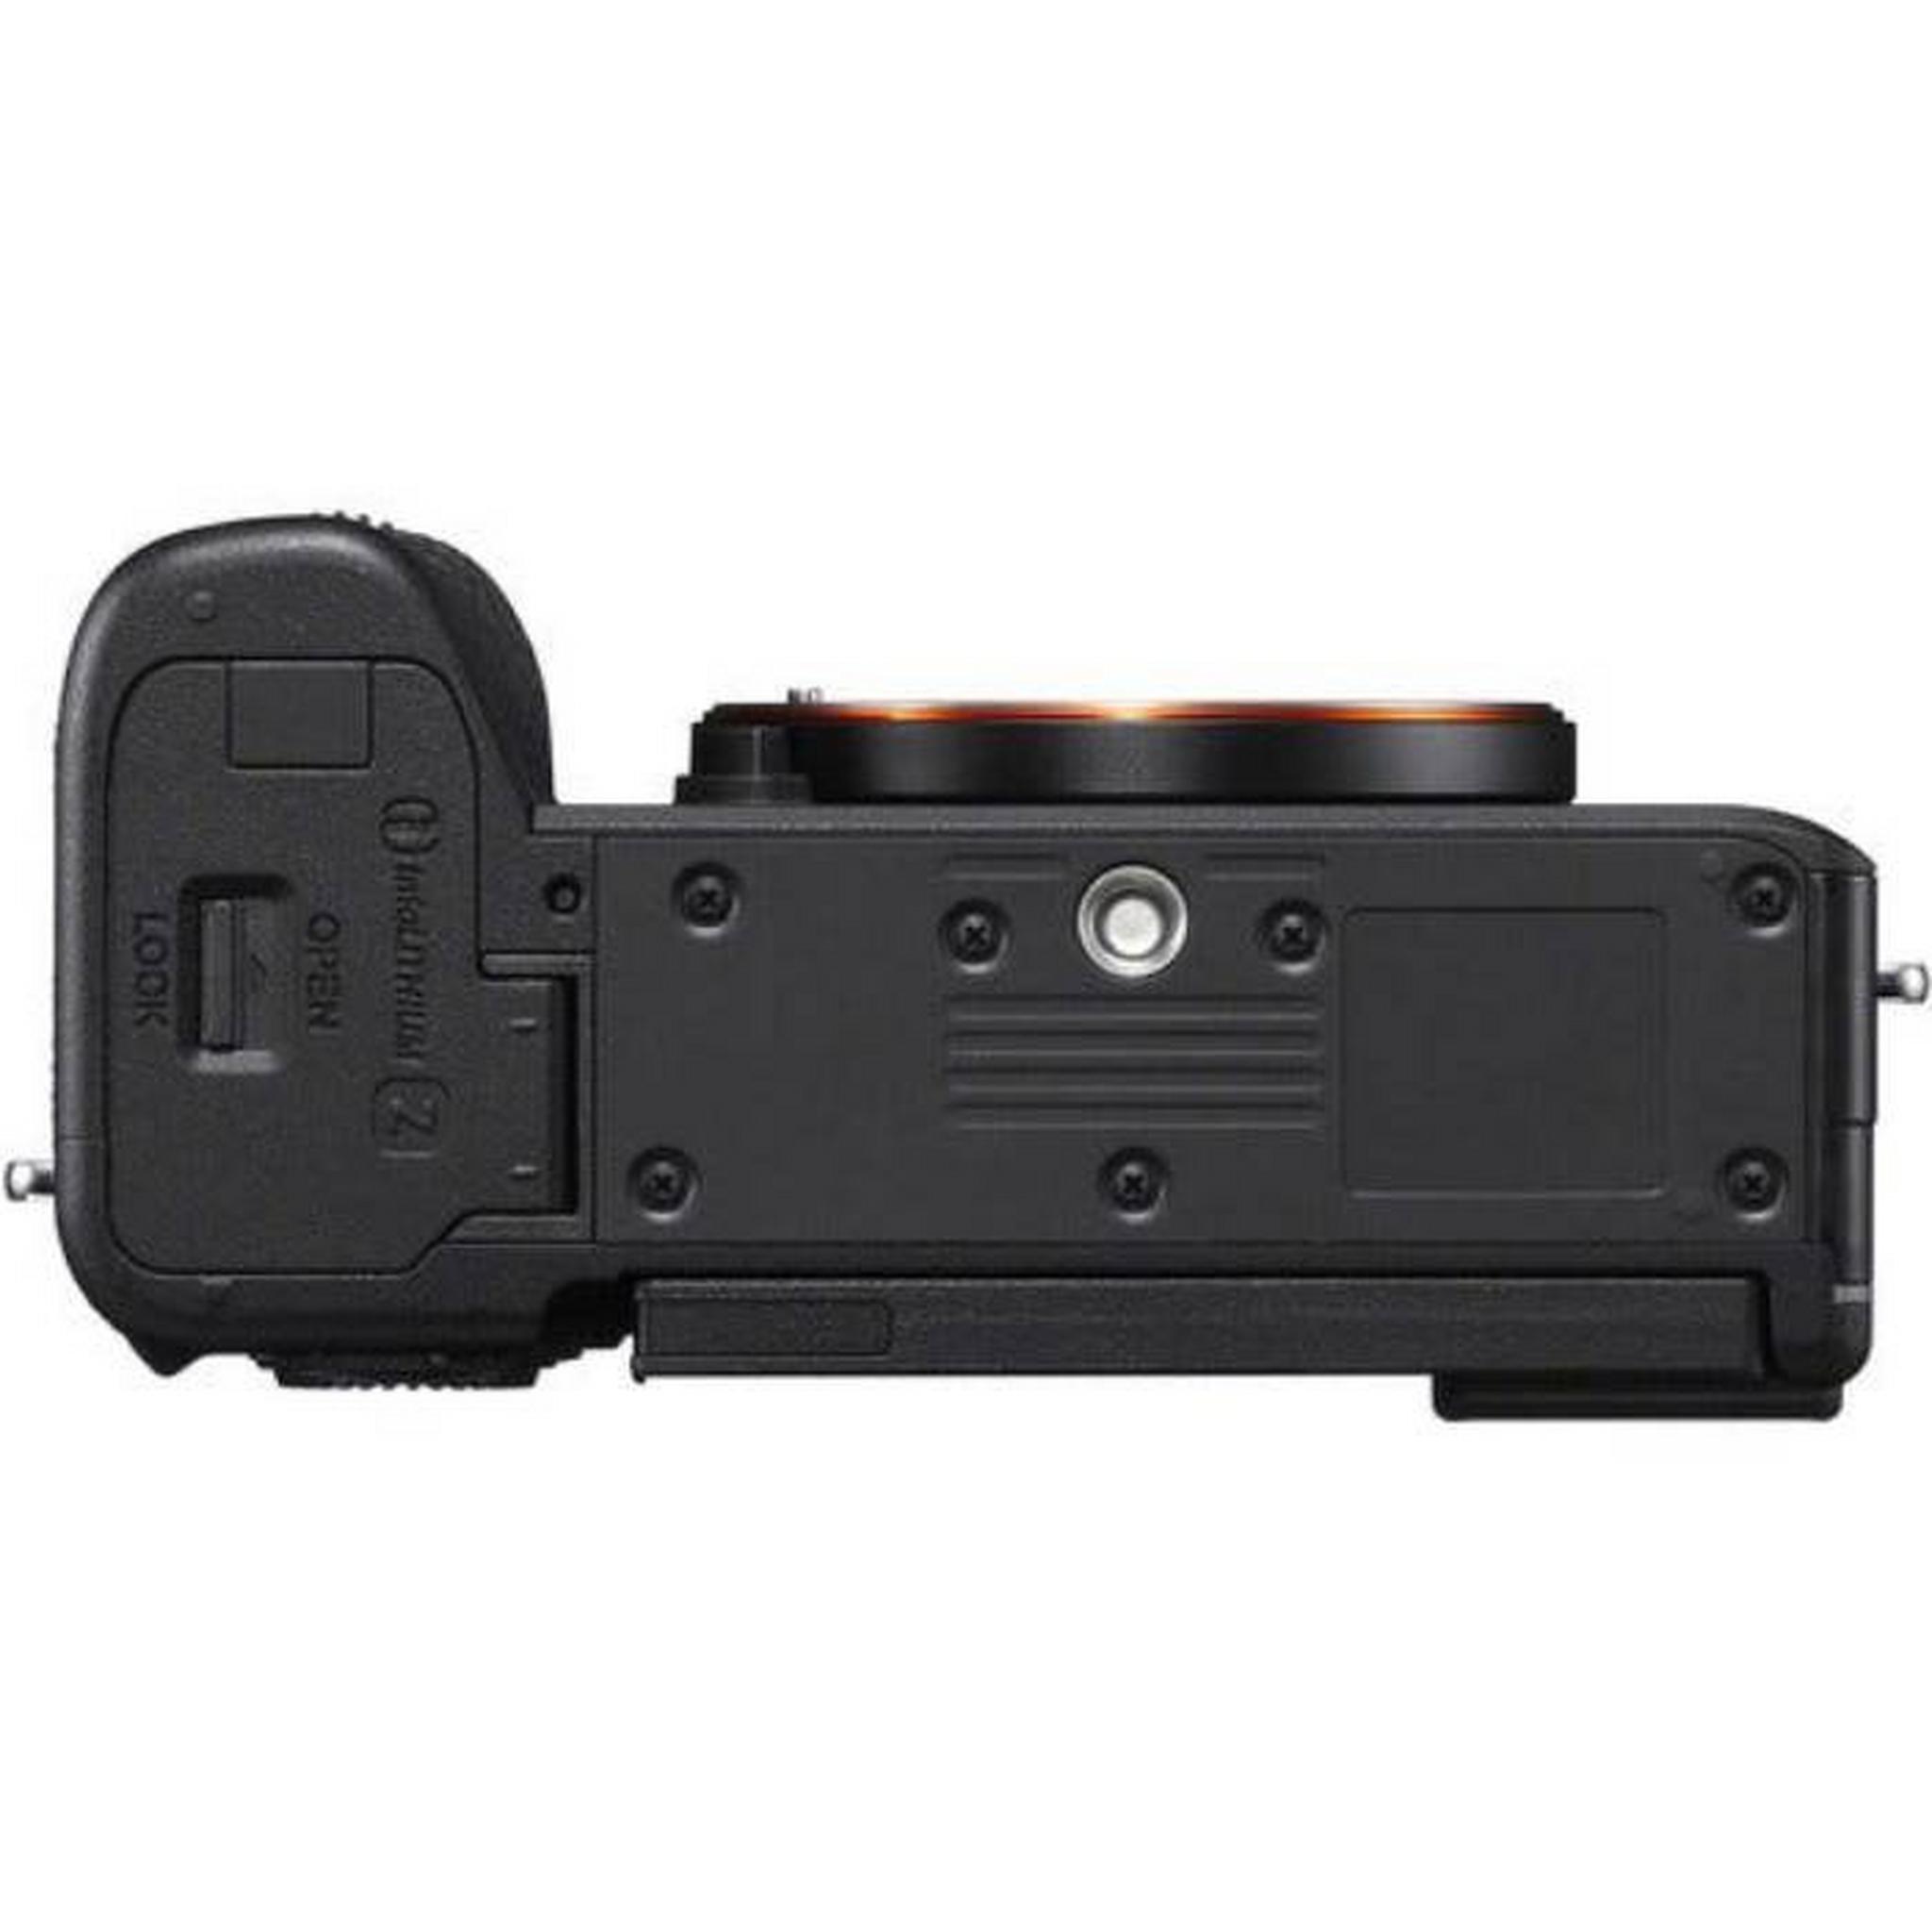 كاميرا ألفا 7 سي ار من سوني، بدون مرآة، (هيكل)، ILCE-7CR/BQ AF1 – أسود